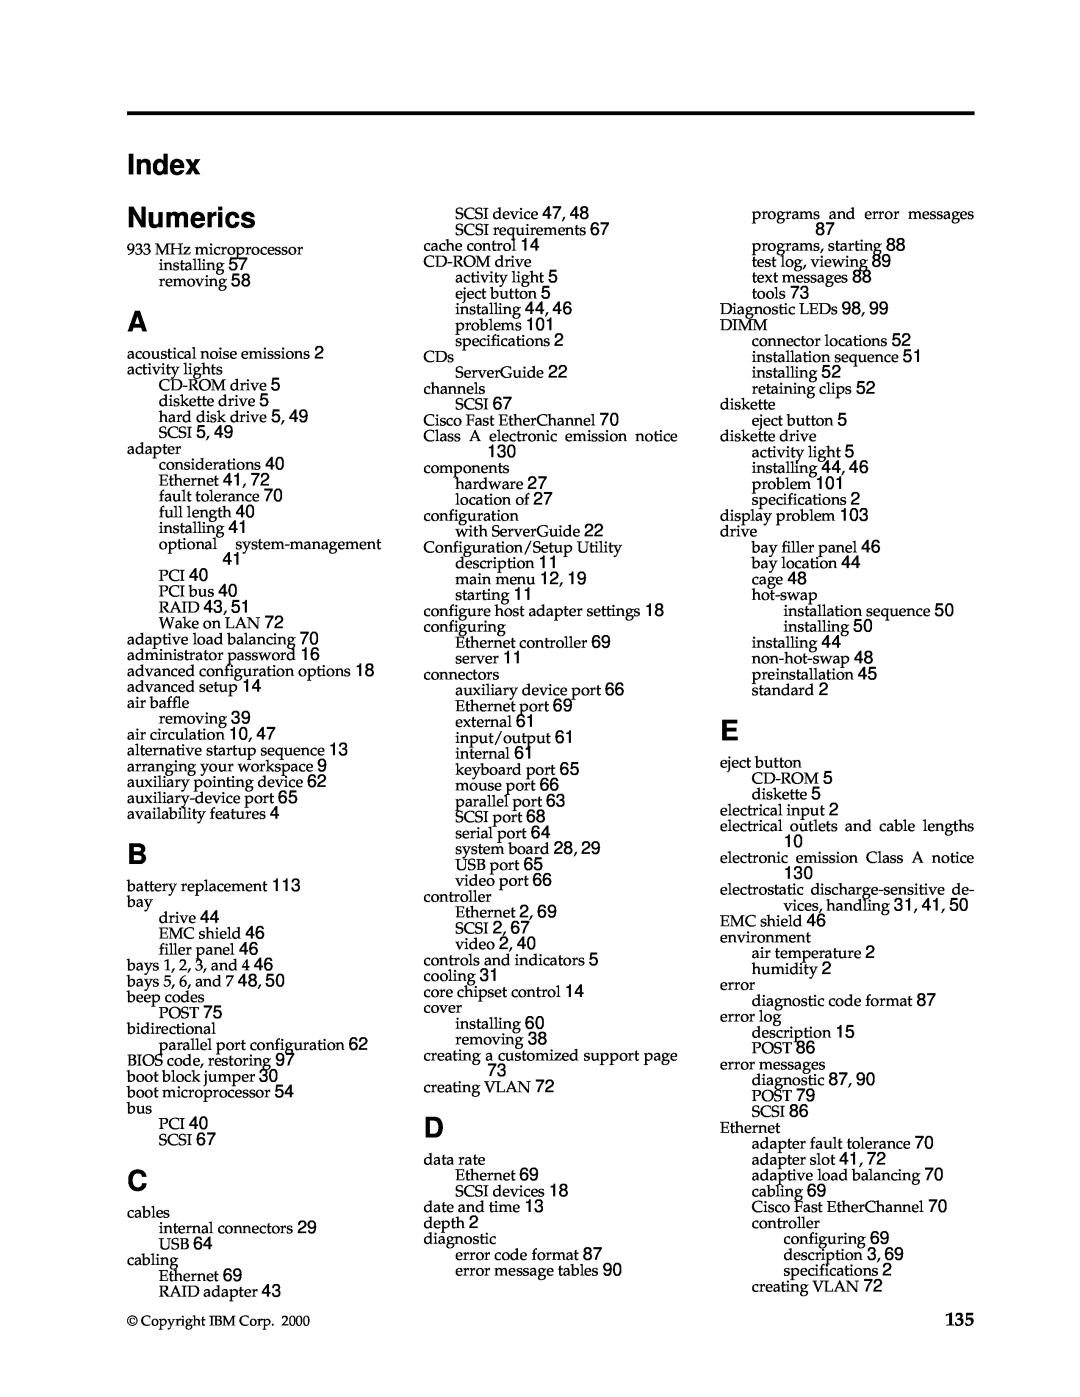 IBM 220 manual Index Numerics 